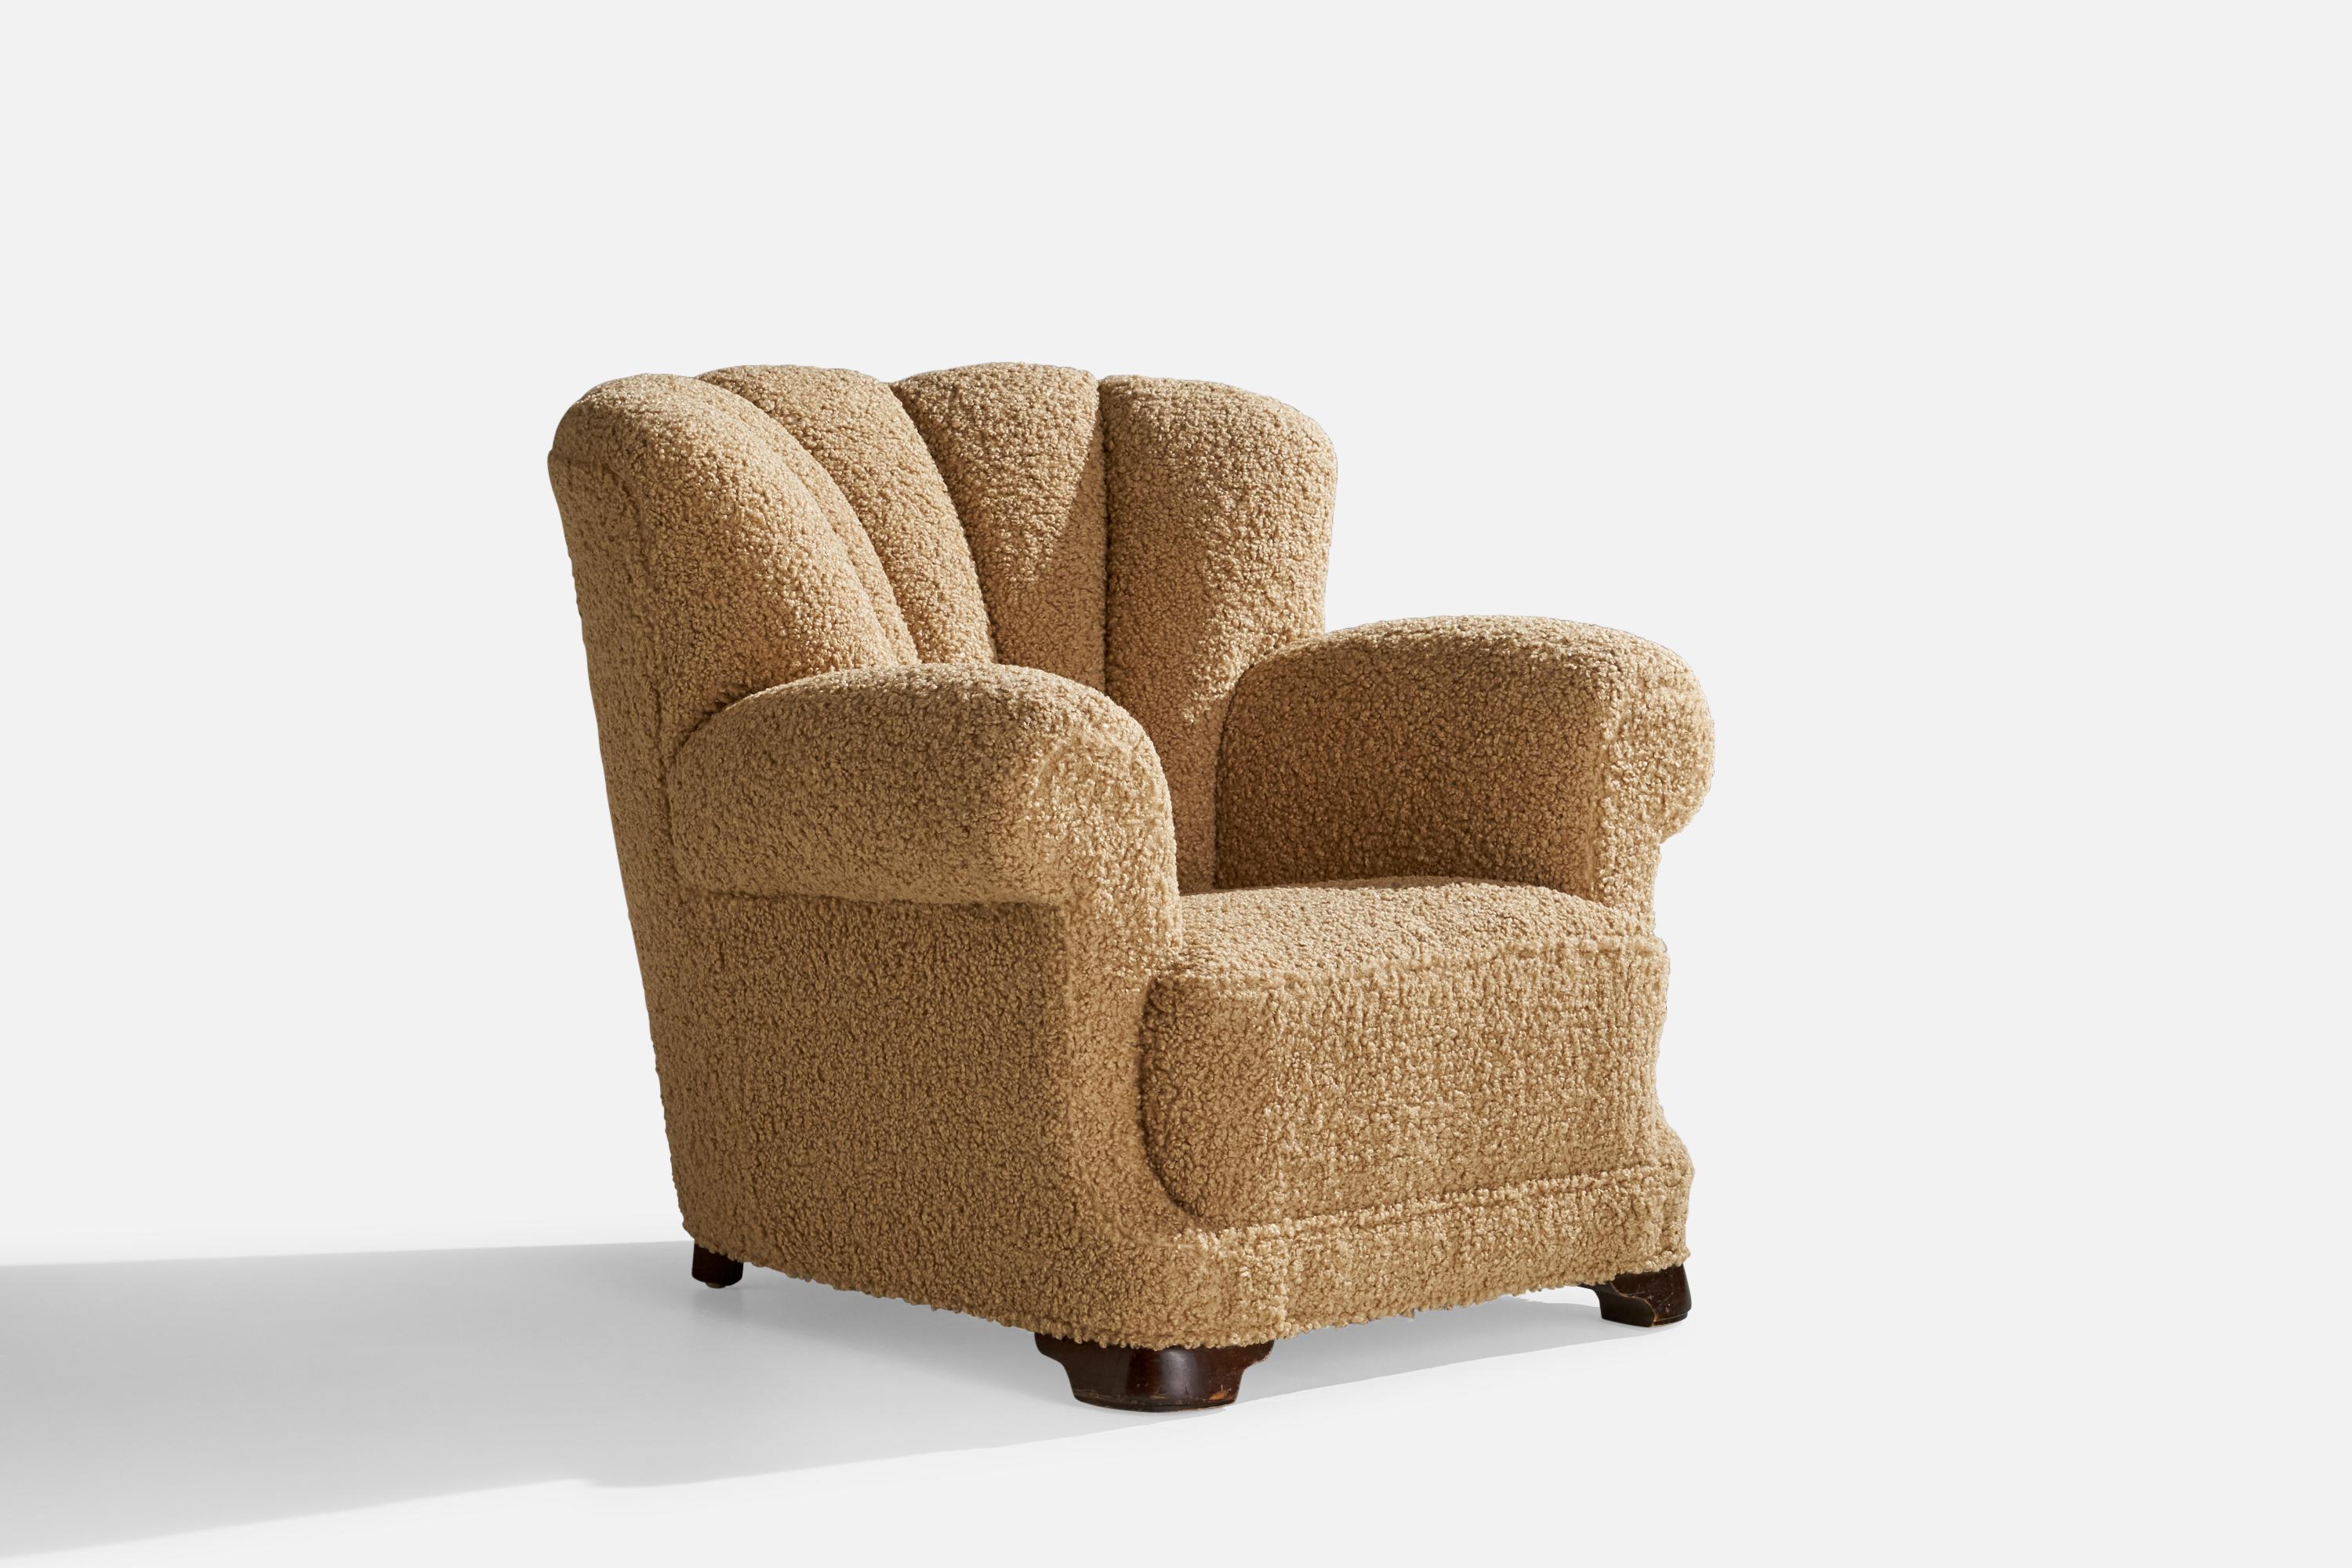 Ein Sessel aus dunkel gebeiztem Holz und beigem Bouclé-Stoff, entworfen und hergestellt in Dänemark, 1930er Jahre.

Sitzhöhe 16